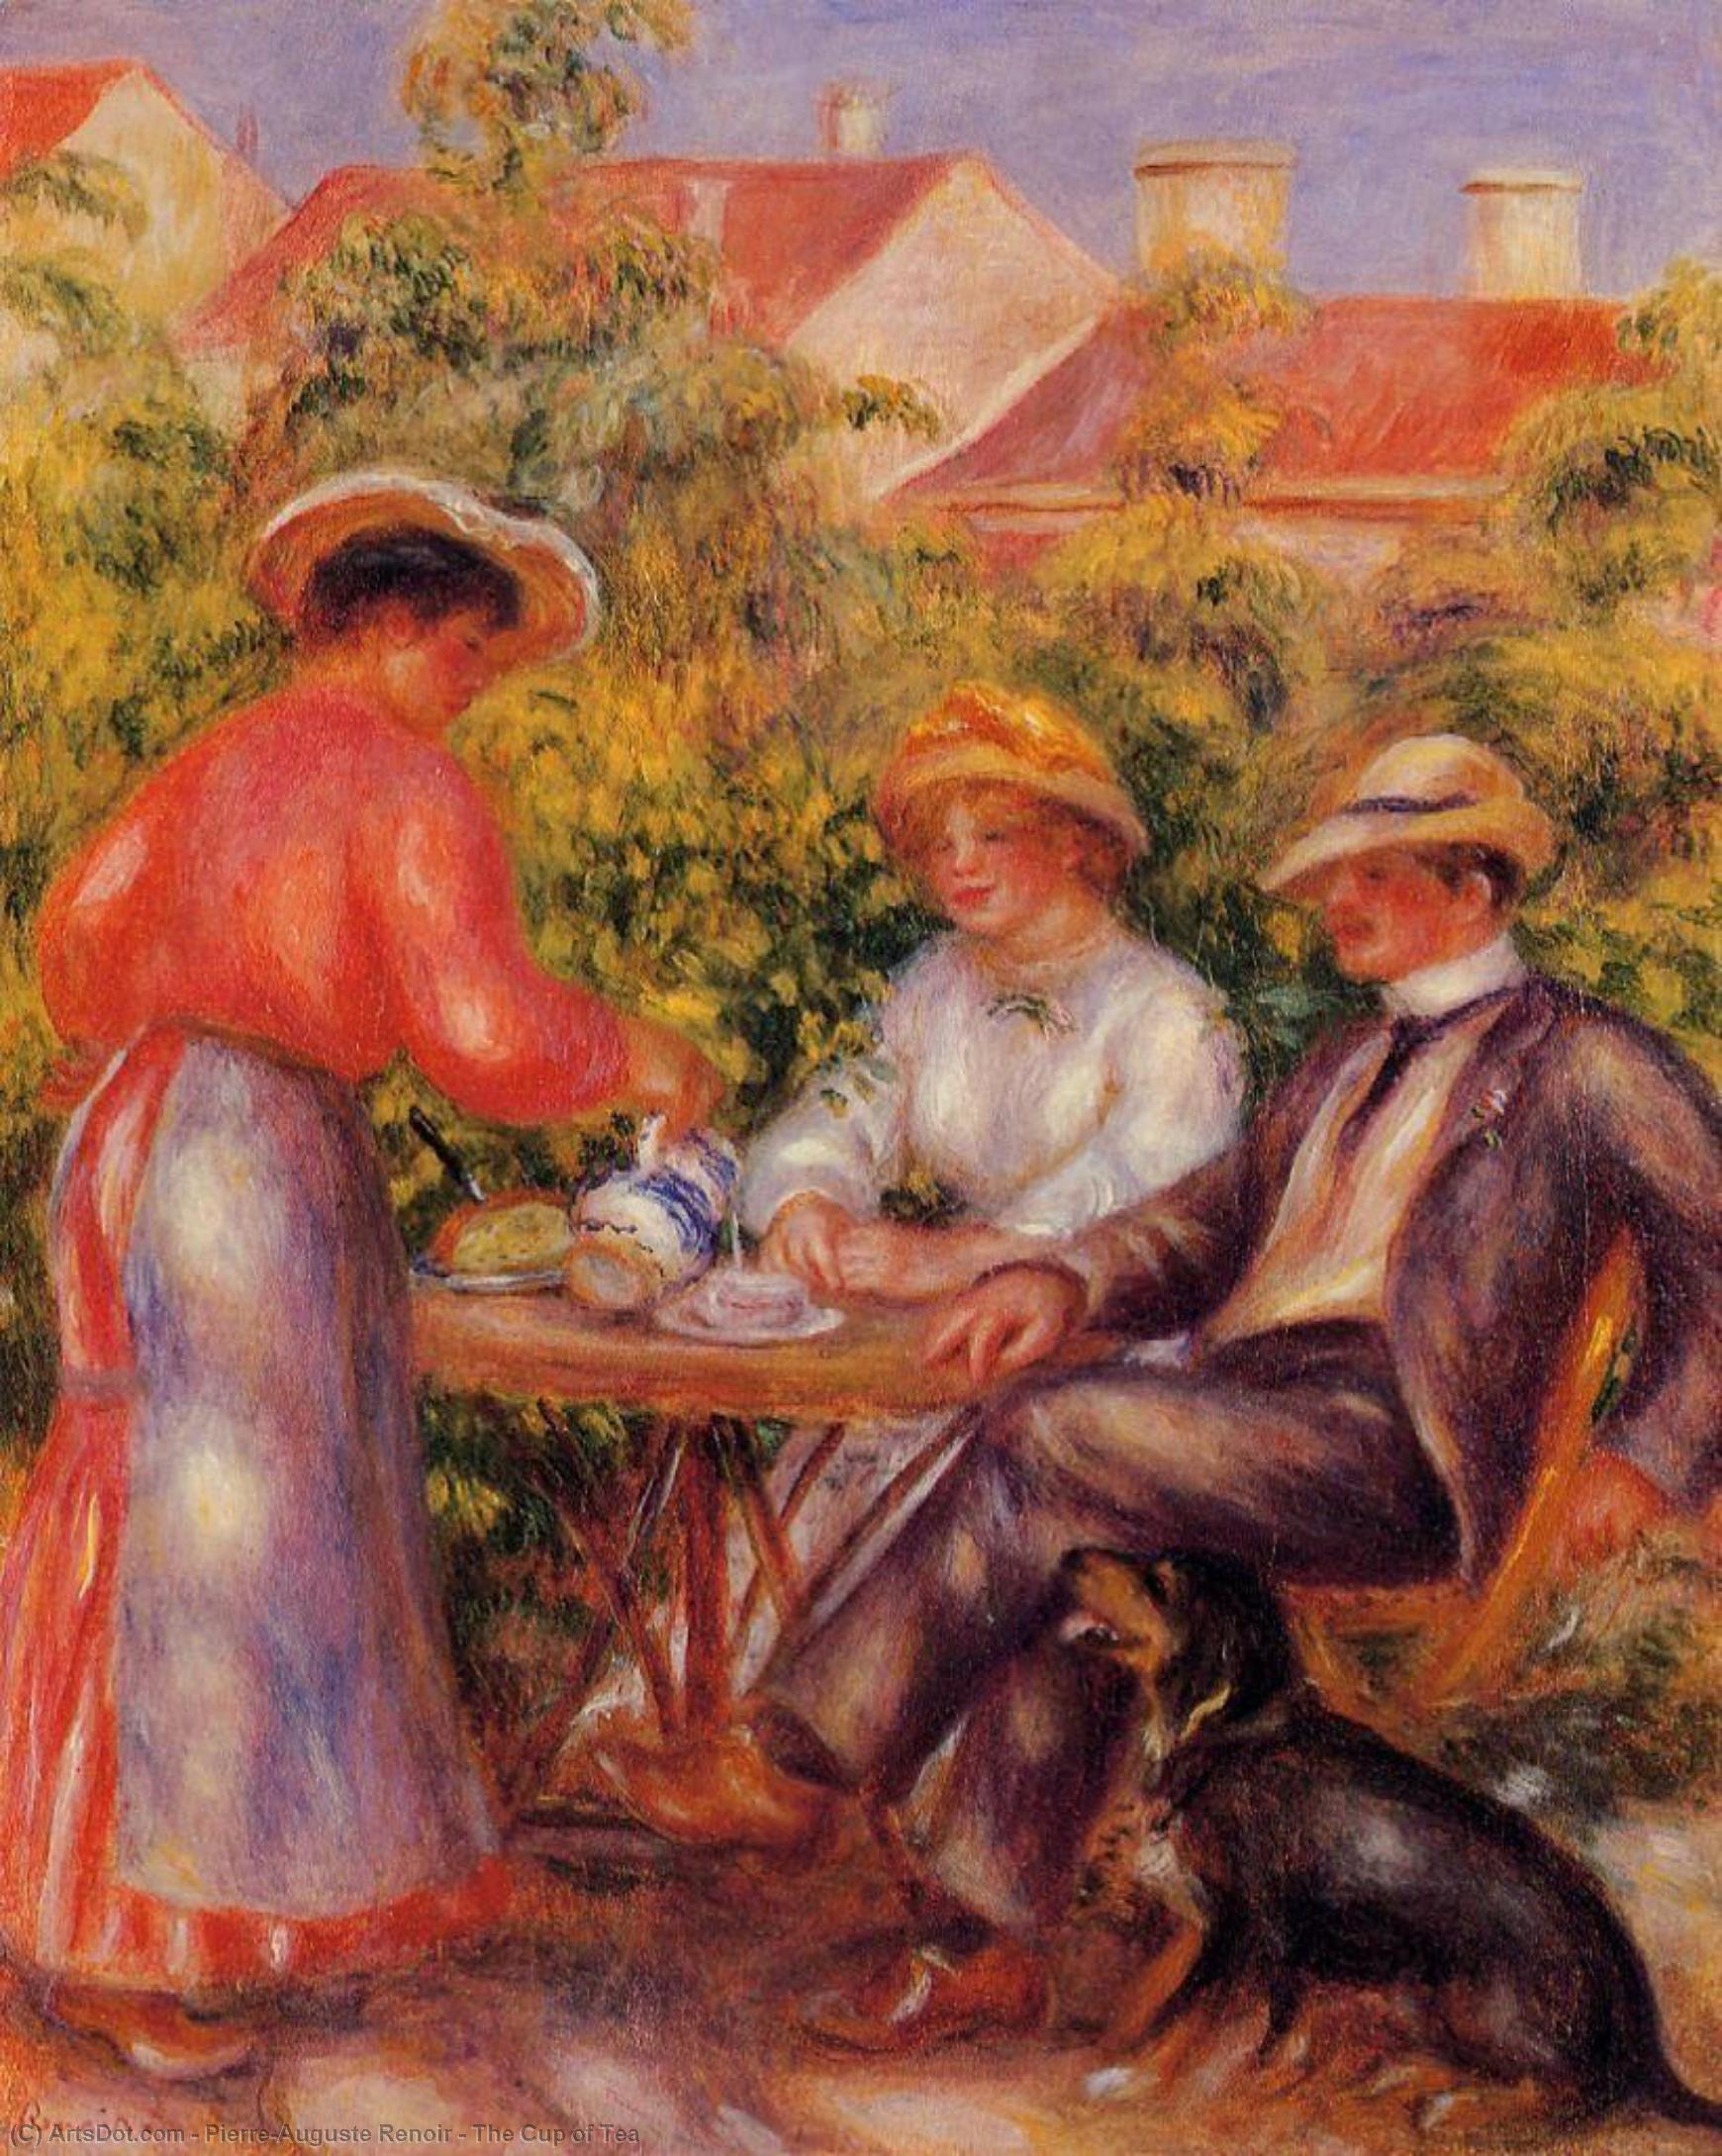 WikiOO.org - Encyclopedia of Fine Arts - Målning, konstverk Pierre-Auguste Renoir - The Cup of Tea